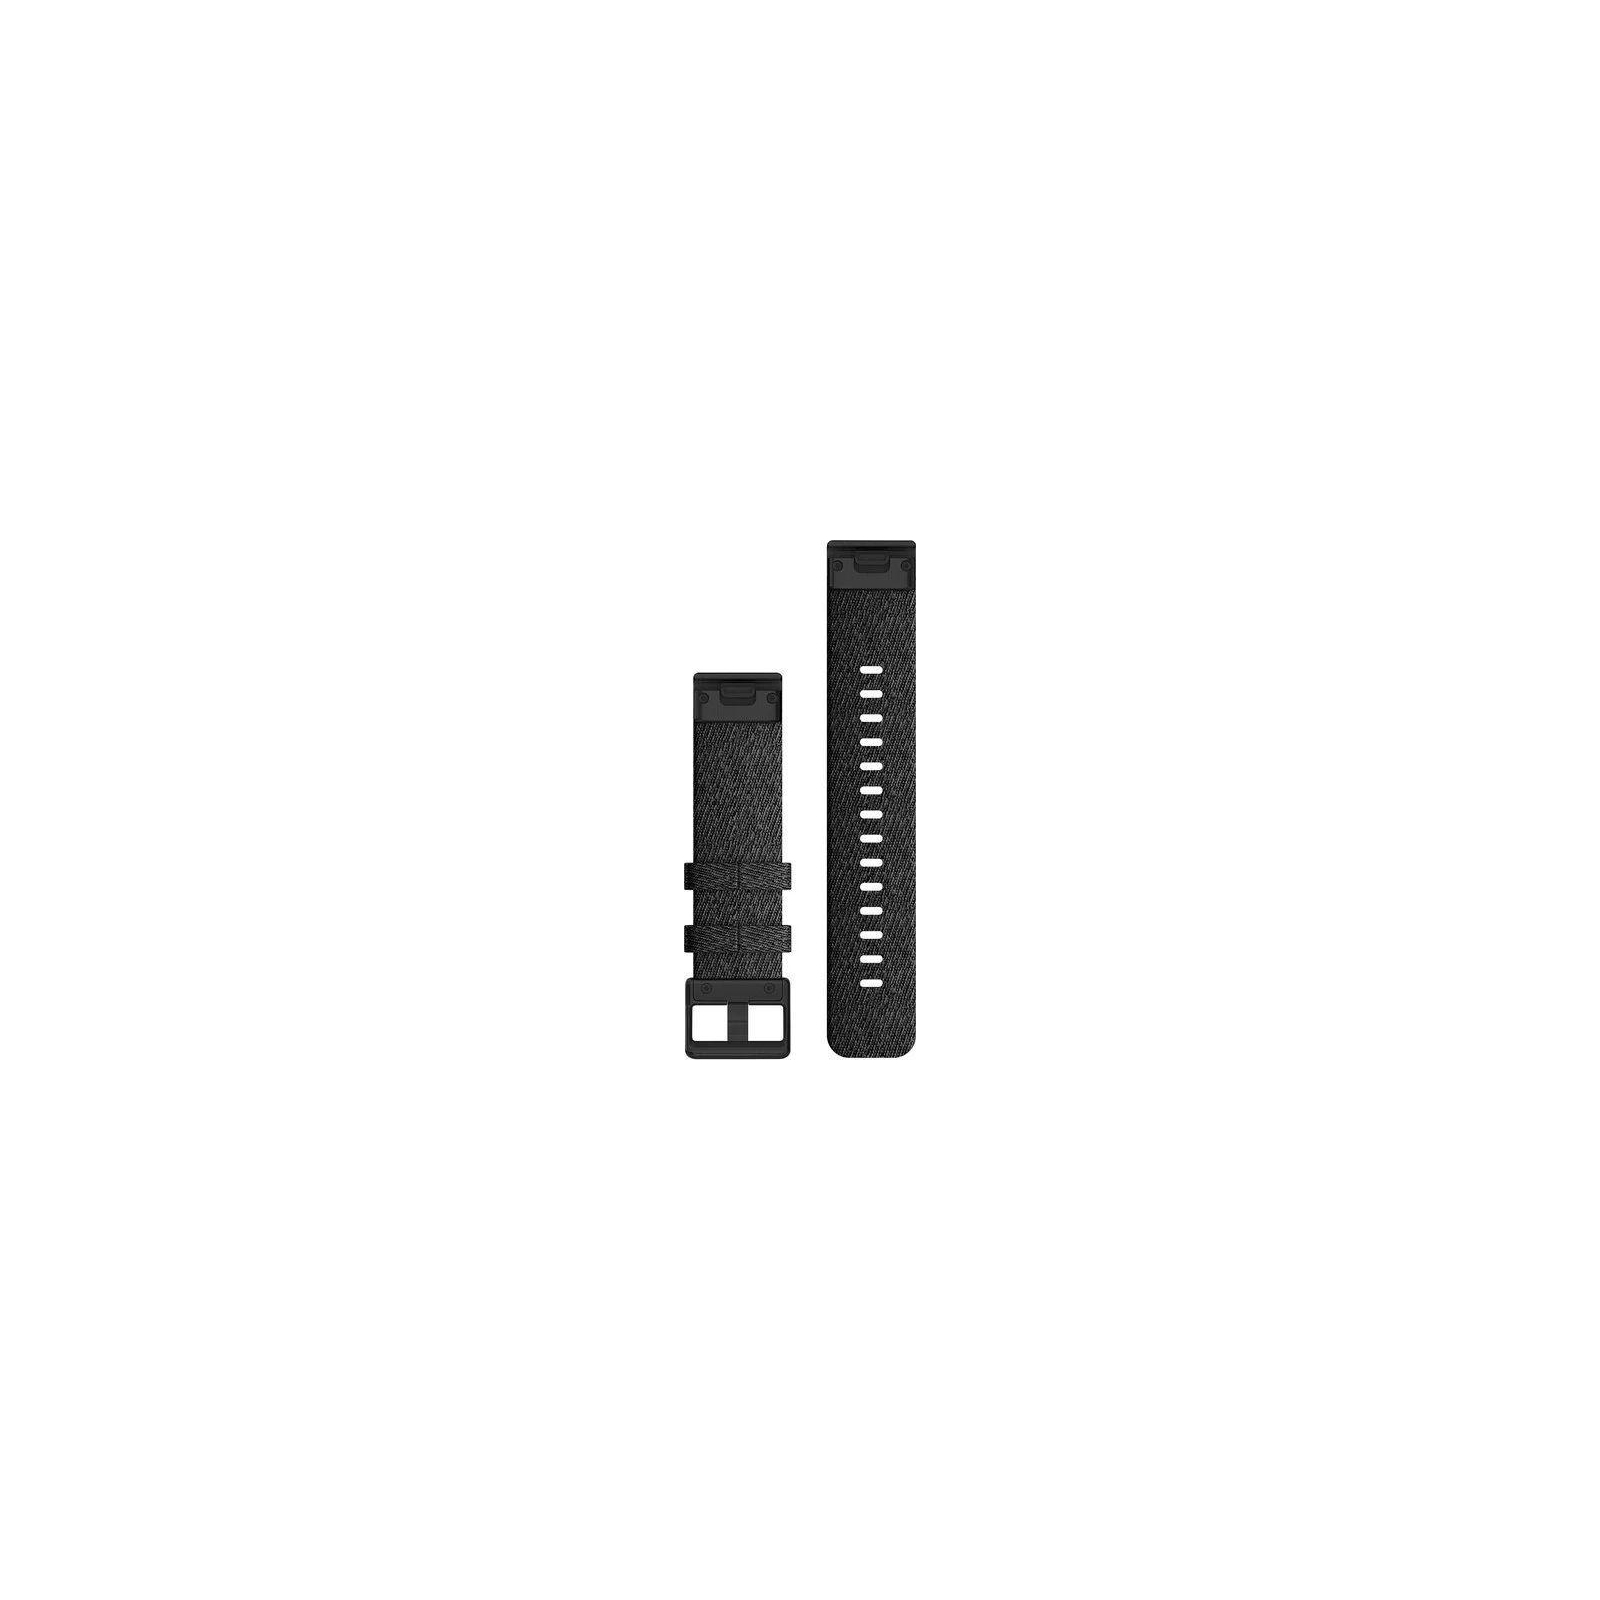 Ремешок для смарт-часов Garmin fenix 6s 20mm QuickFit Heathered Black Nylon with Black Hardware (010-12875-00) изображение 2